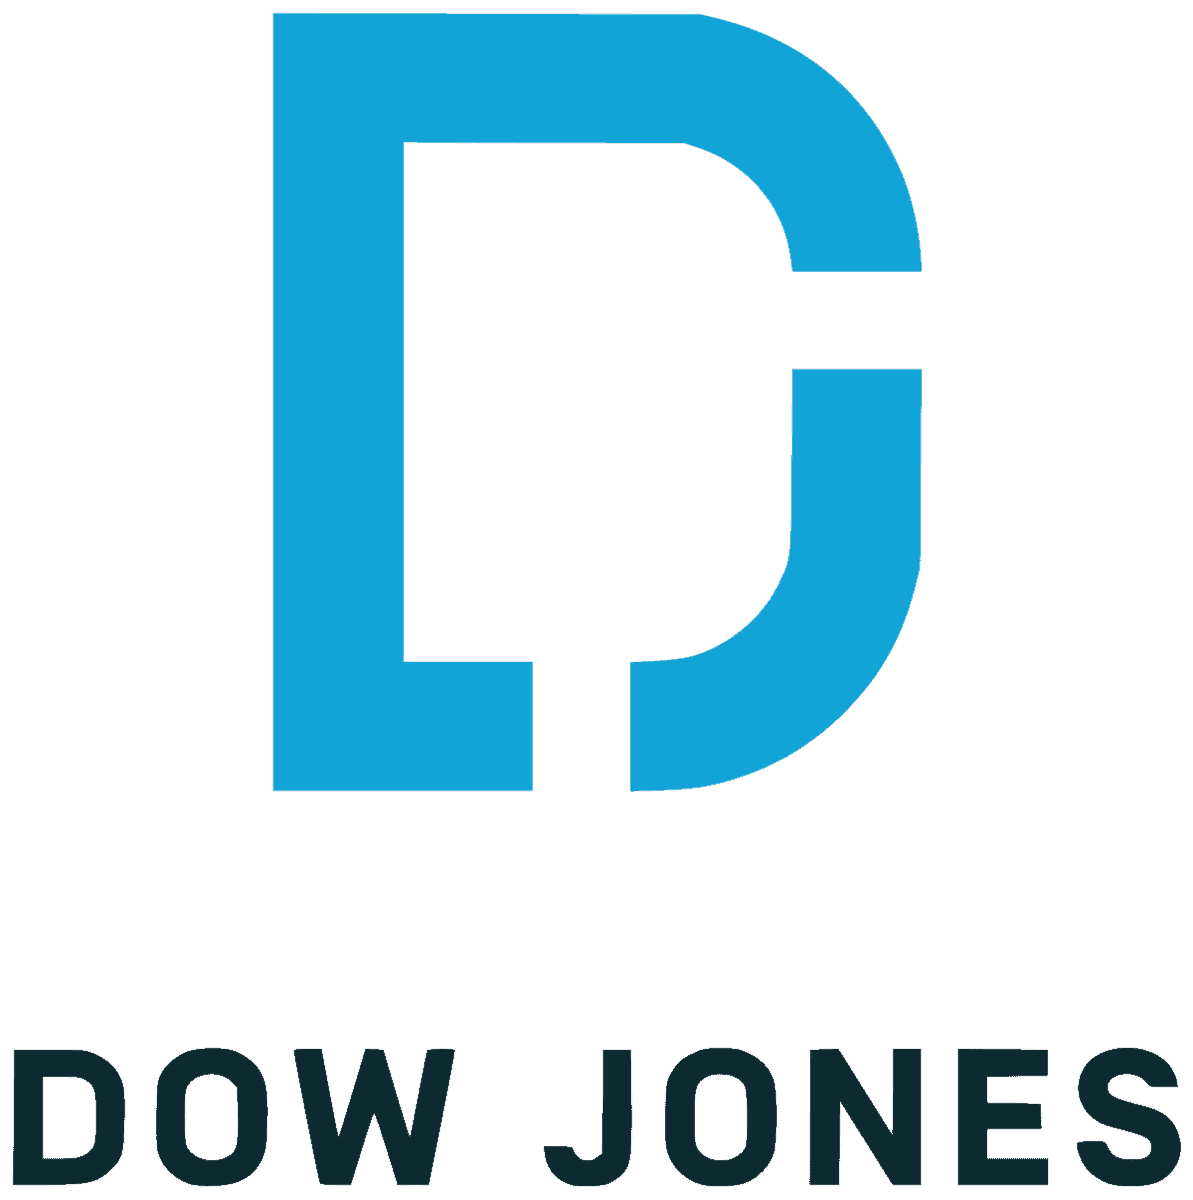 Investing in Dow Jones